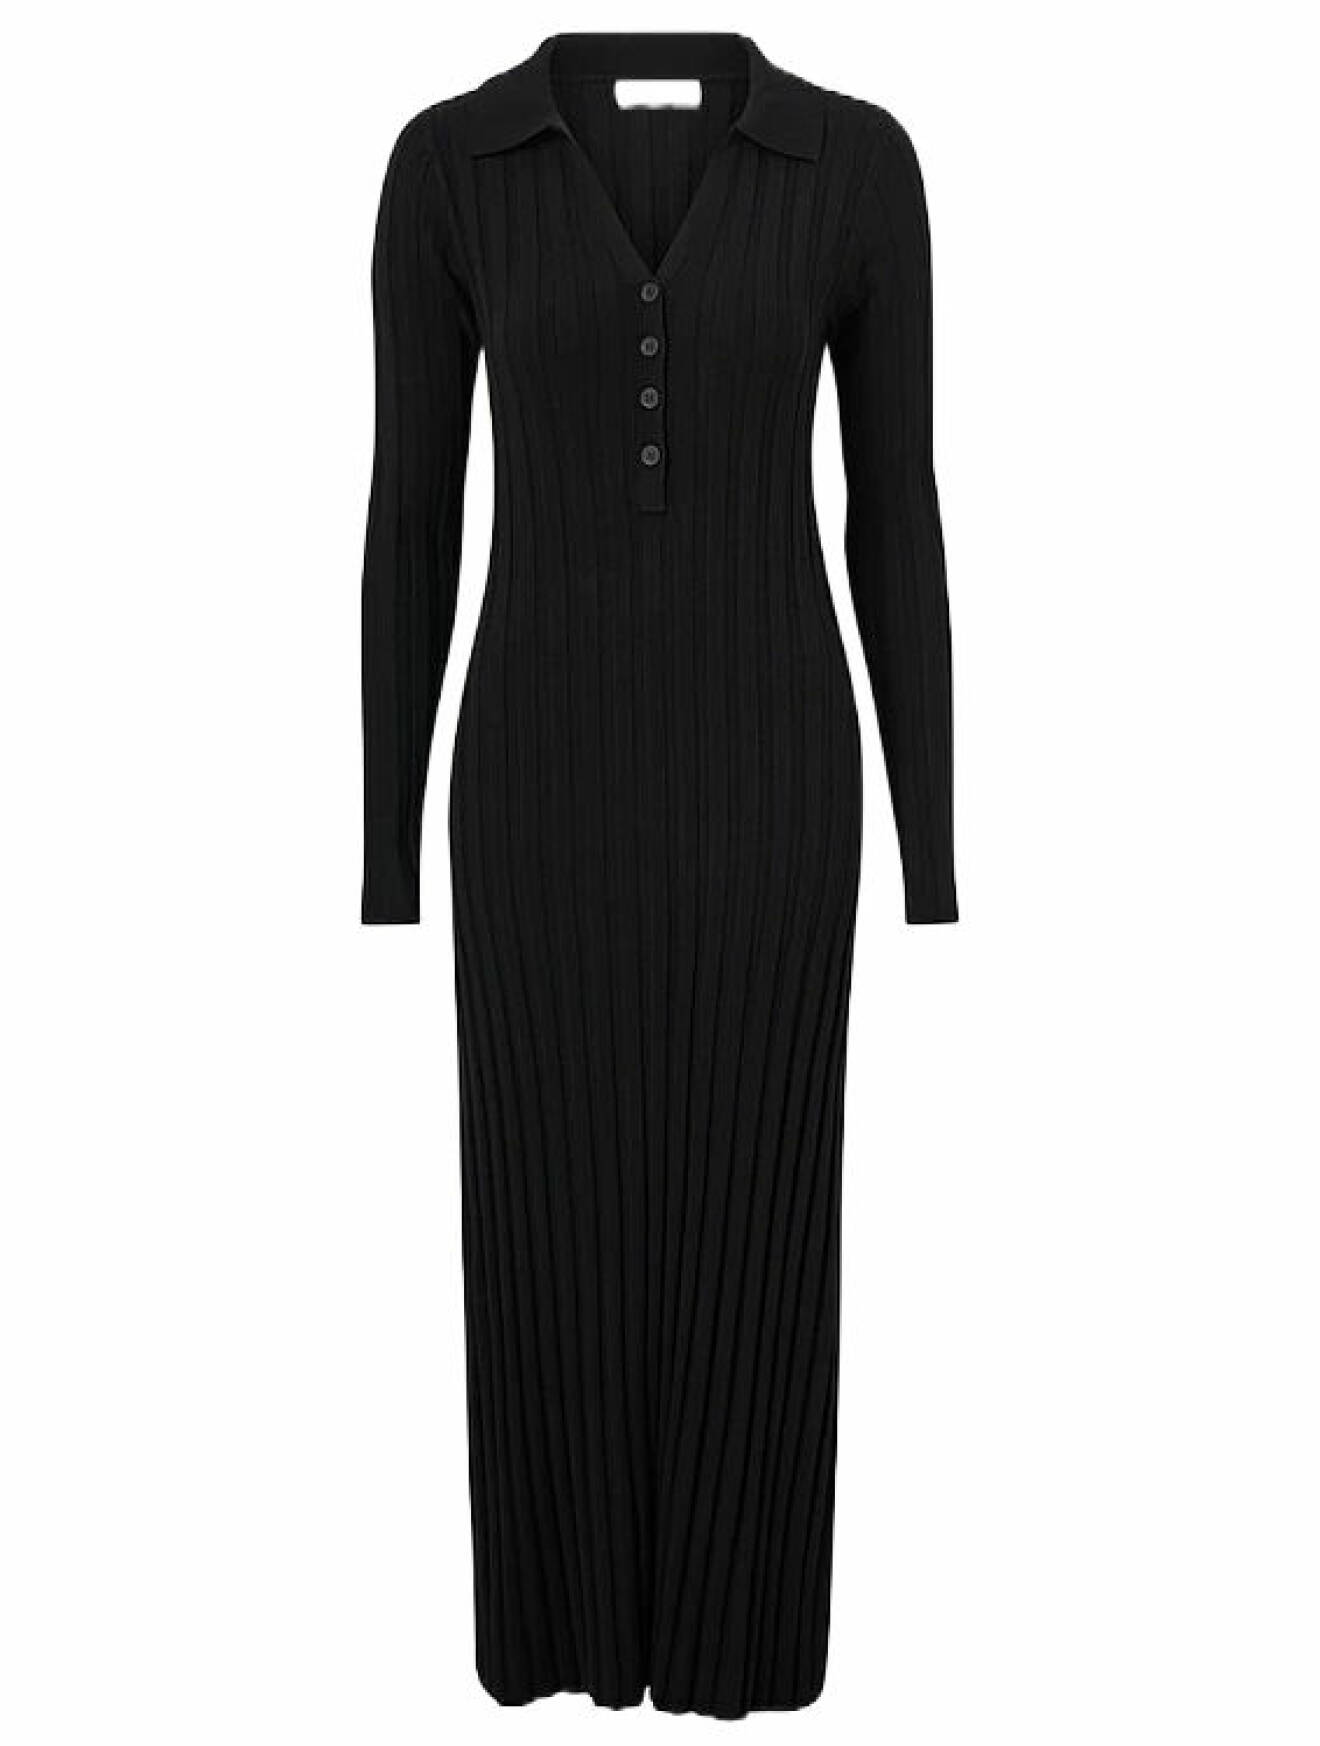 svart ribbstickad klänning med knappar och krage